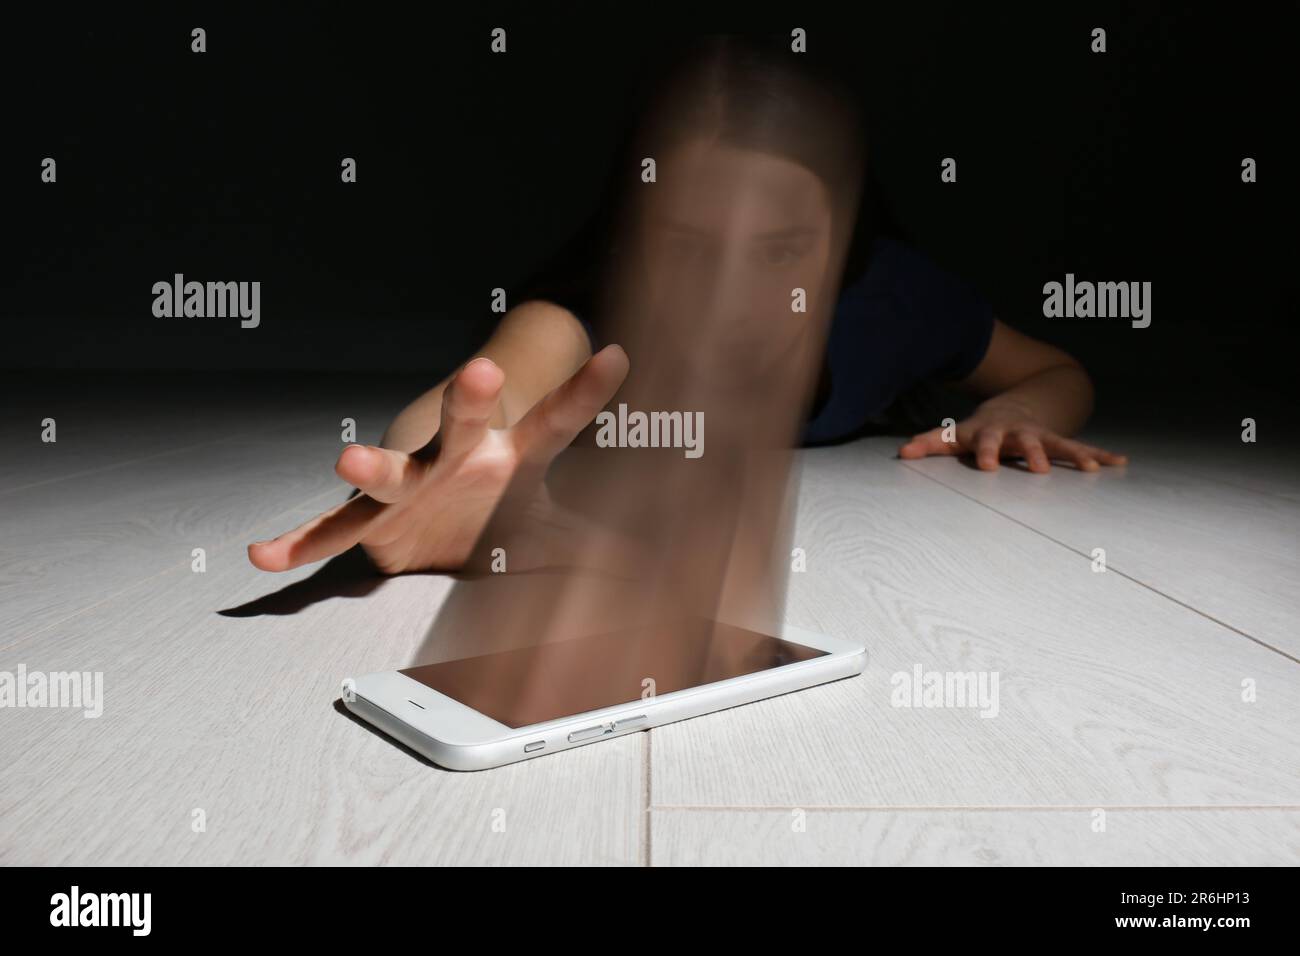 Suchtkonzepte im Internet oder in sozialen Medien. Frau, die auf dem Boden nach einem Smartphone streckt, ihr Gesicht absorbiert von einem Gerät Stockfoto